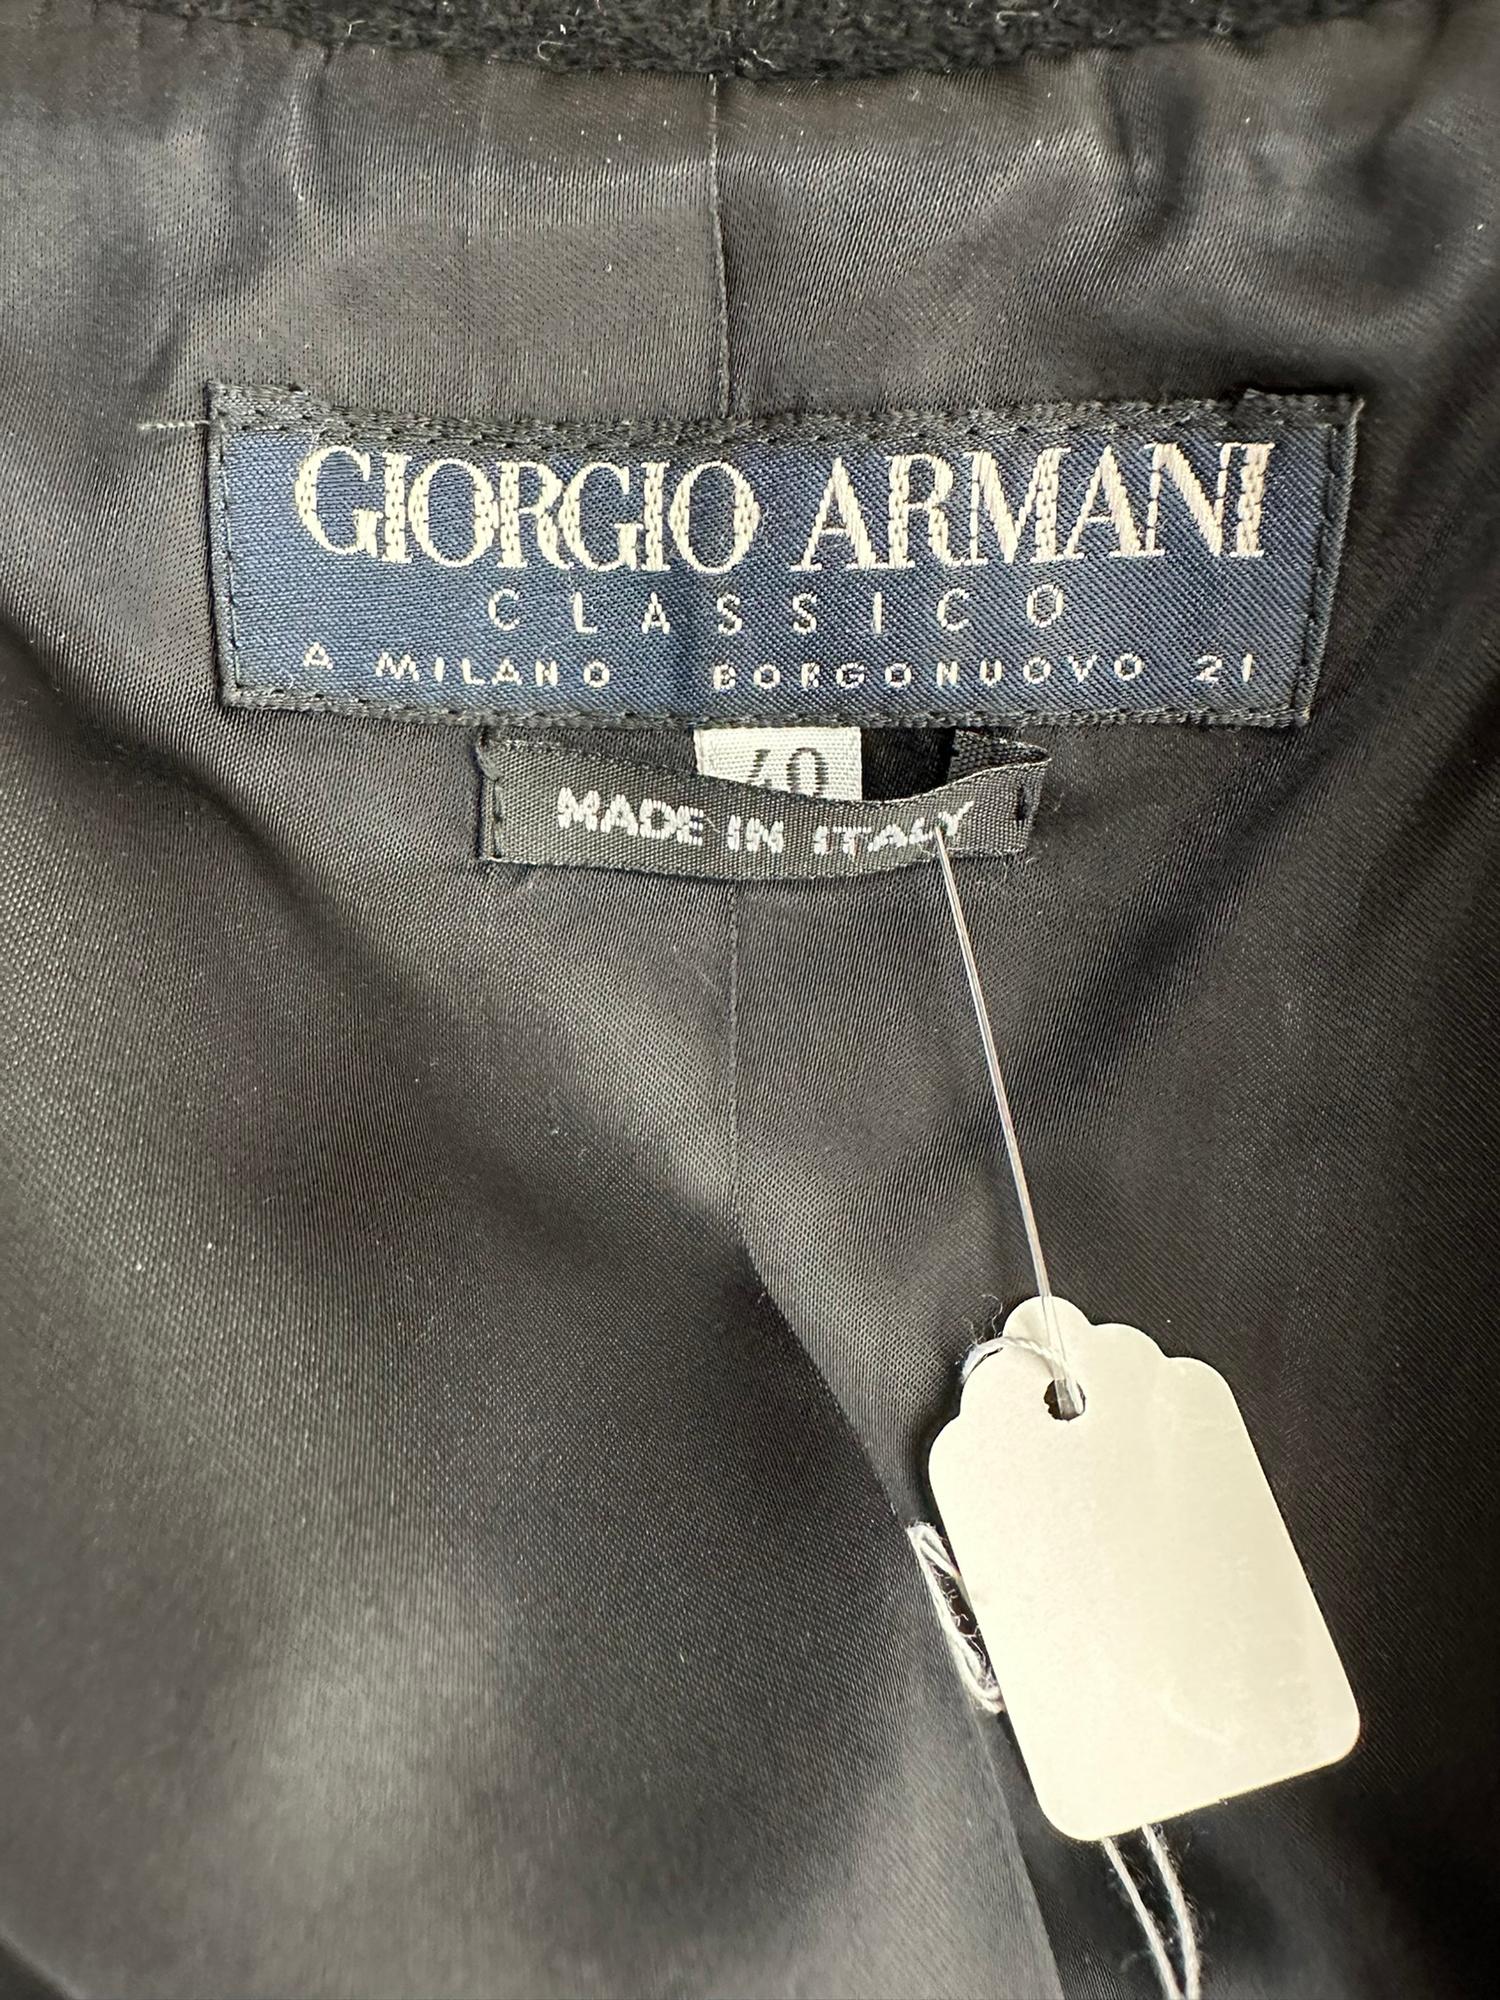 Giorgio Armani Classico Black Label Black Cashmere Double Breasted Winter Coat 9